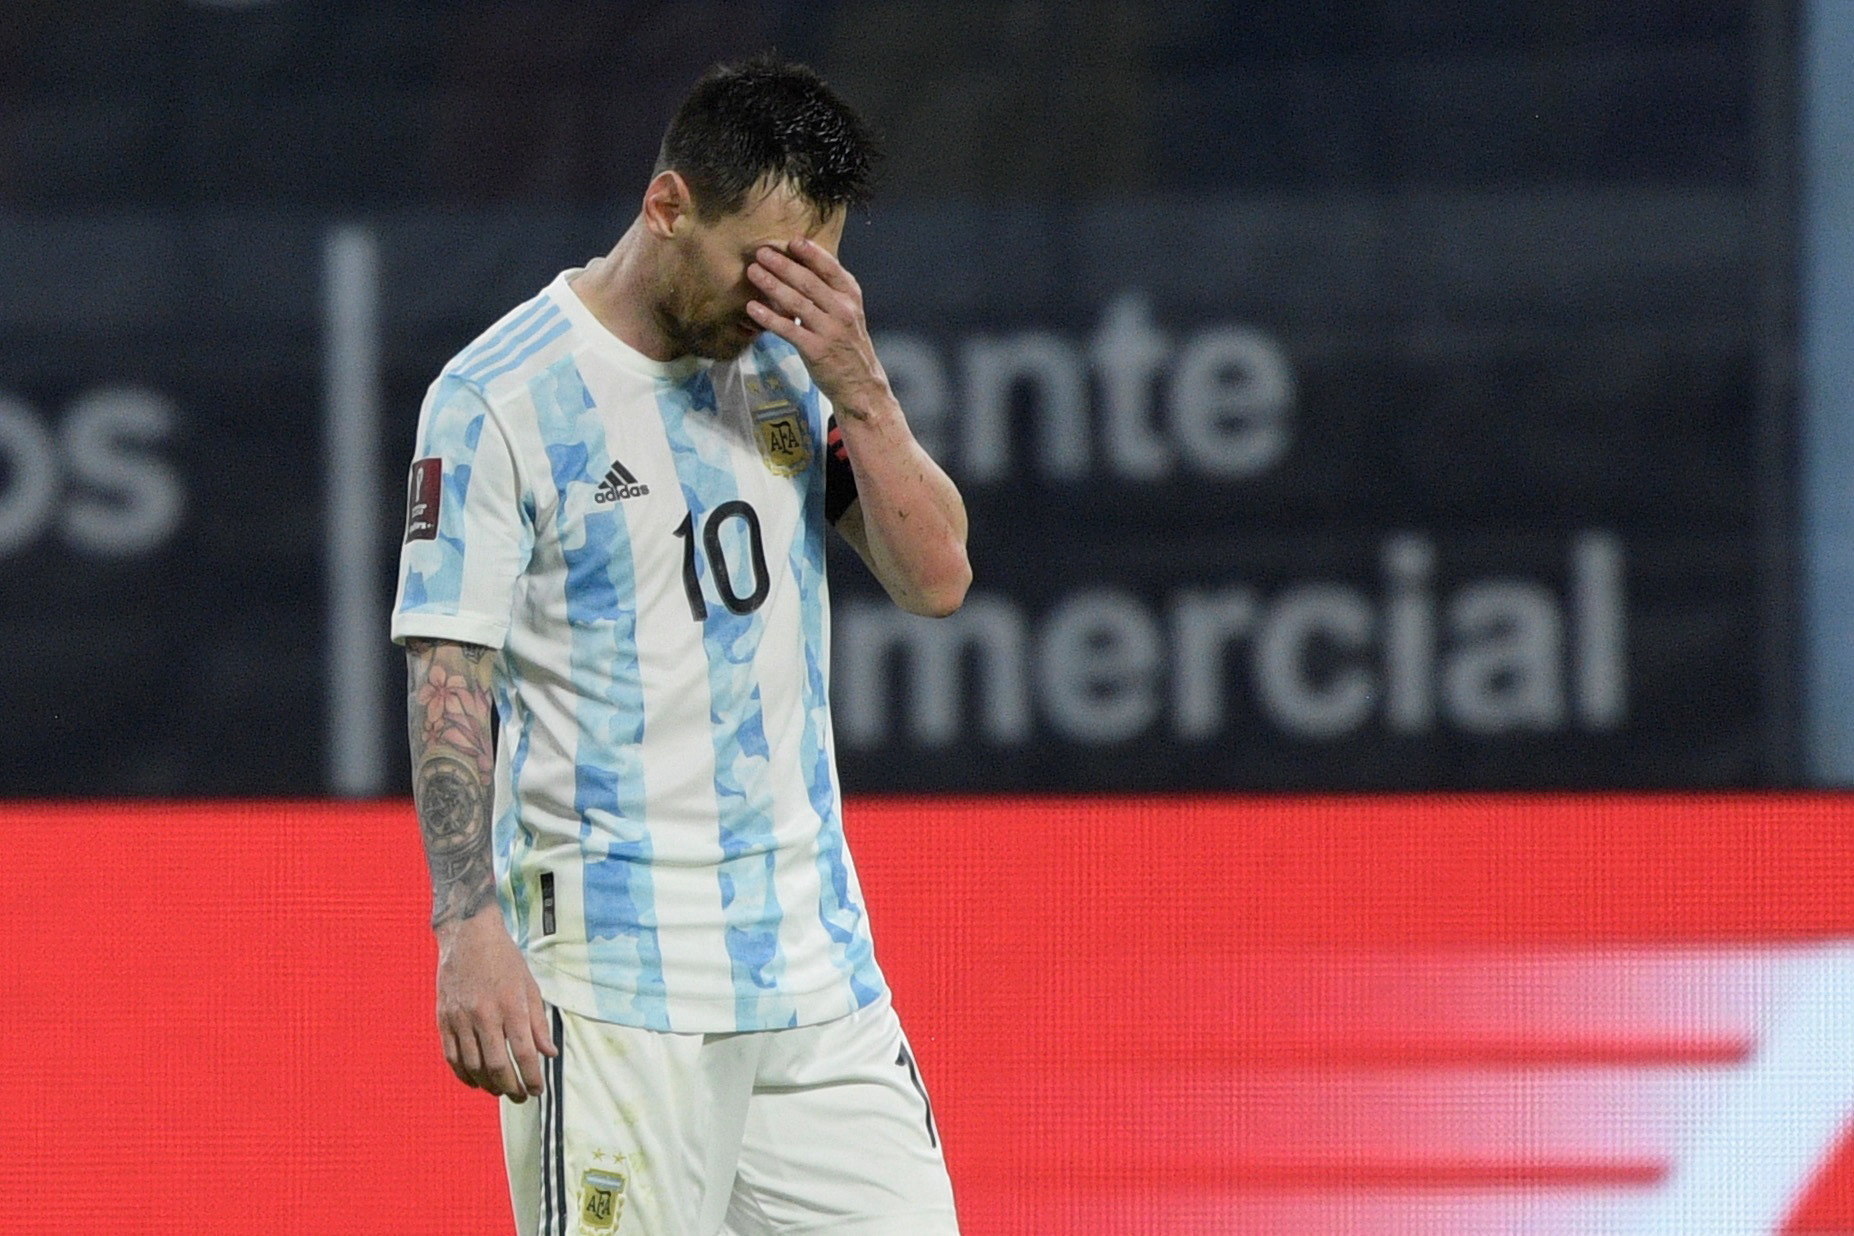 Respiradores donados por Lionel Messi están varados en aeropuerto argentino